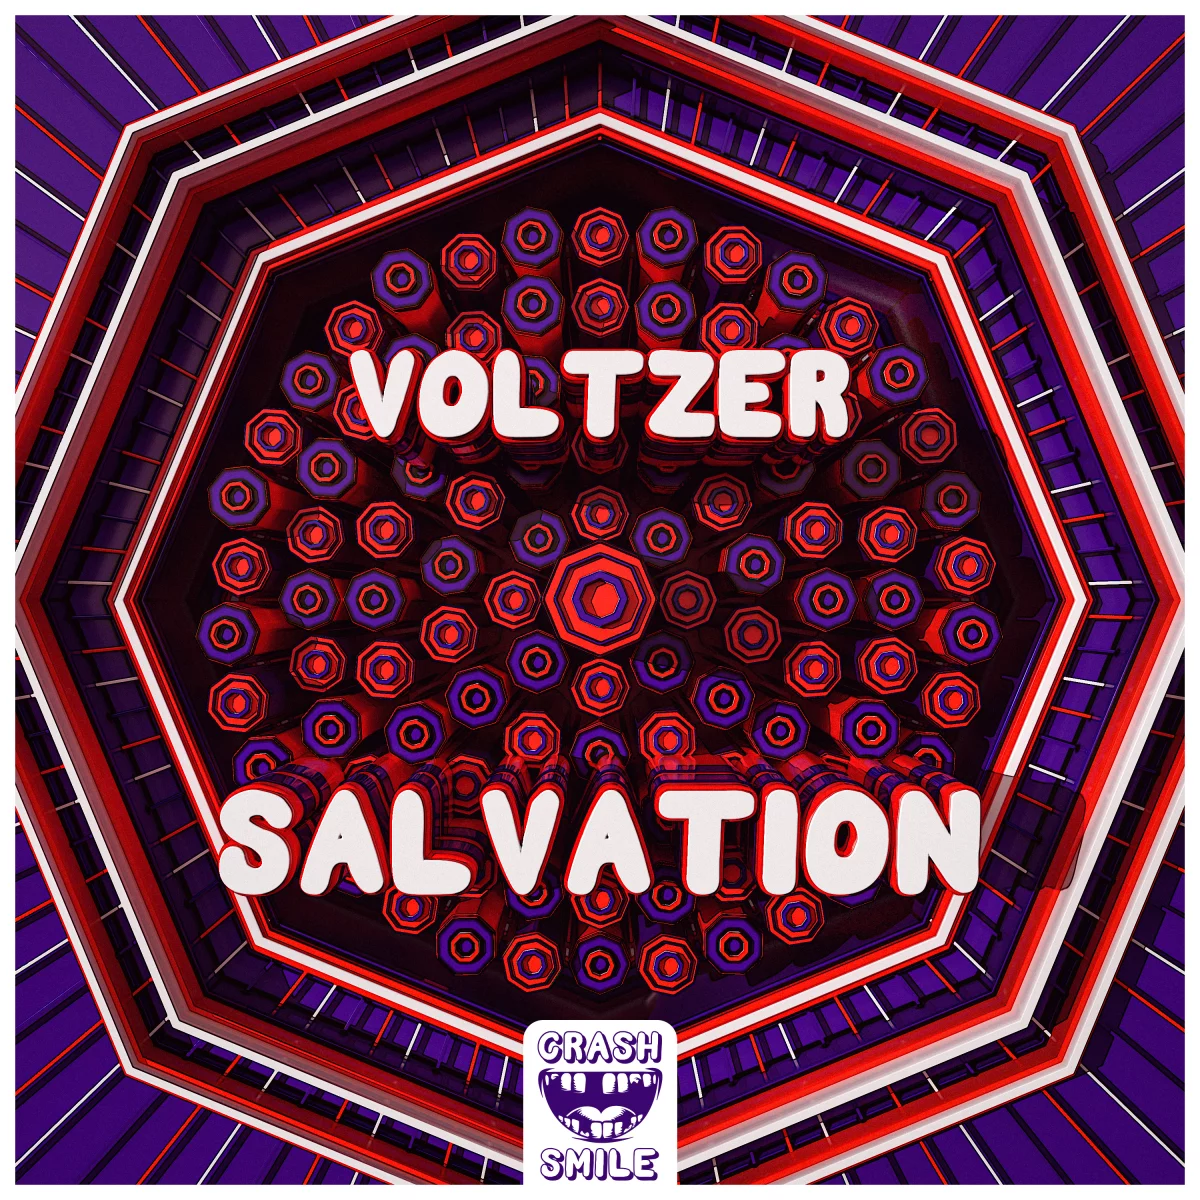 Salvation - Voltzer